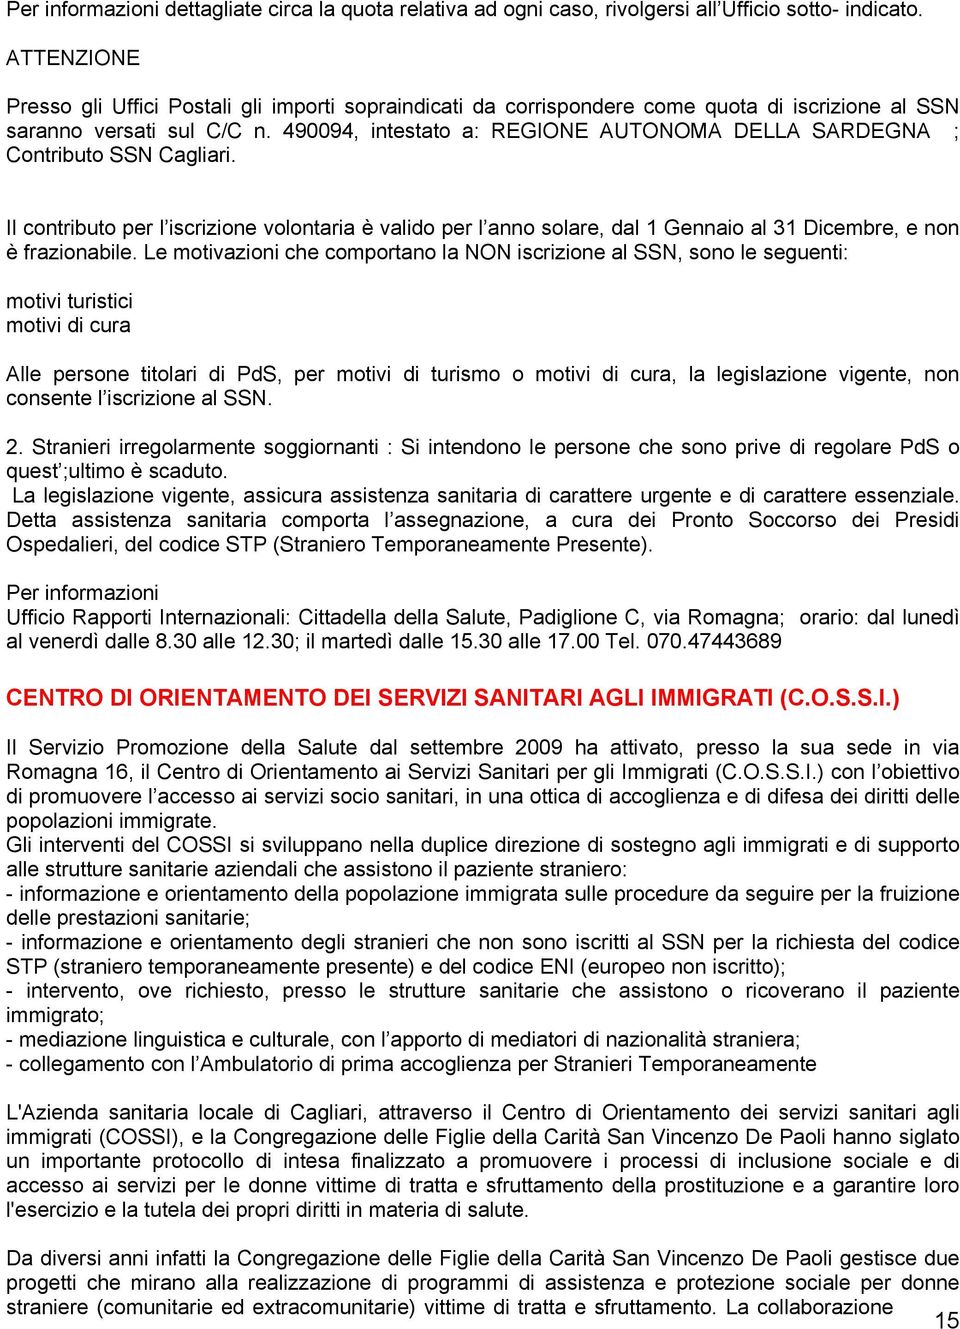 490094, intestato a: REGIONE AUTONOMA DELLA SARDEGNA ; Contributo SSN Cagliari.